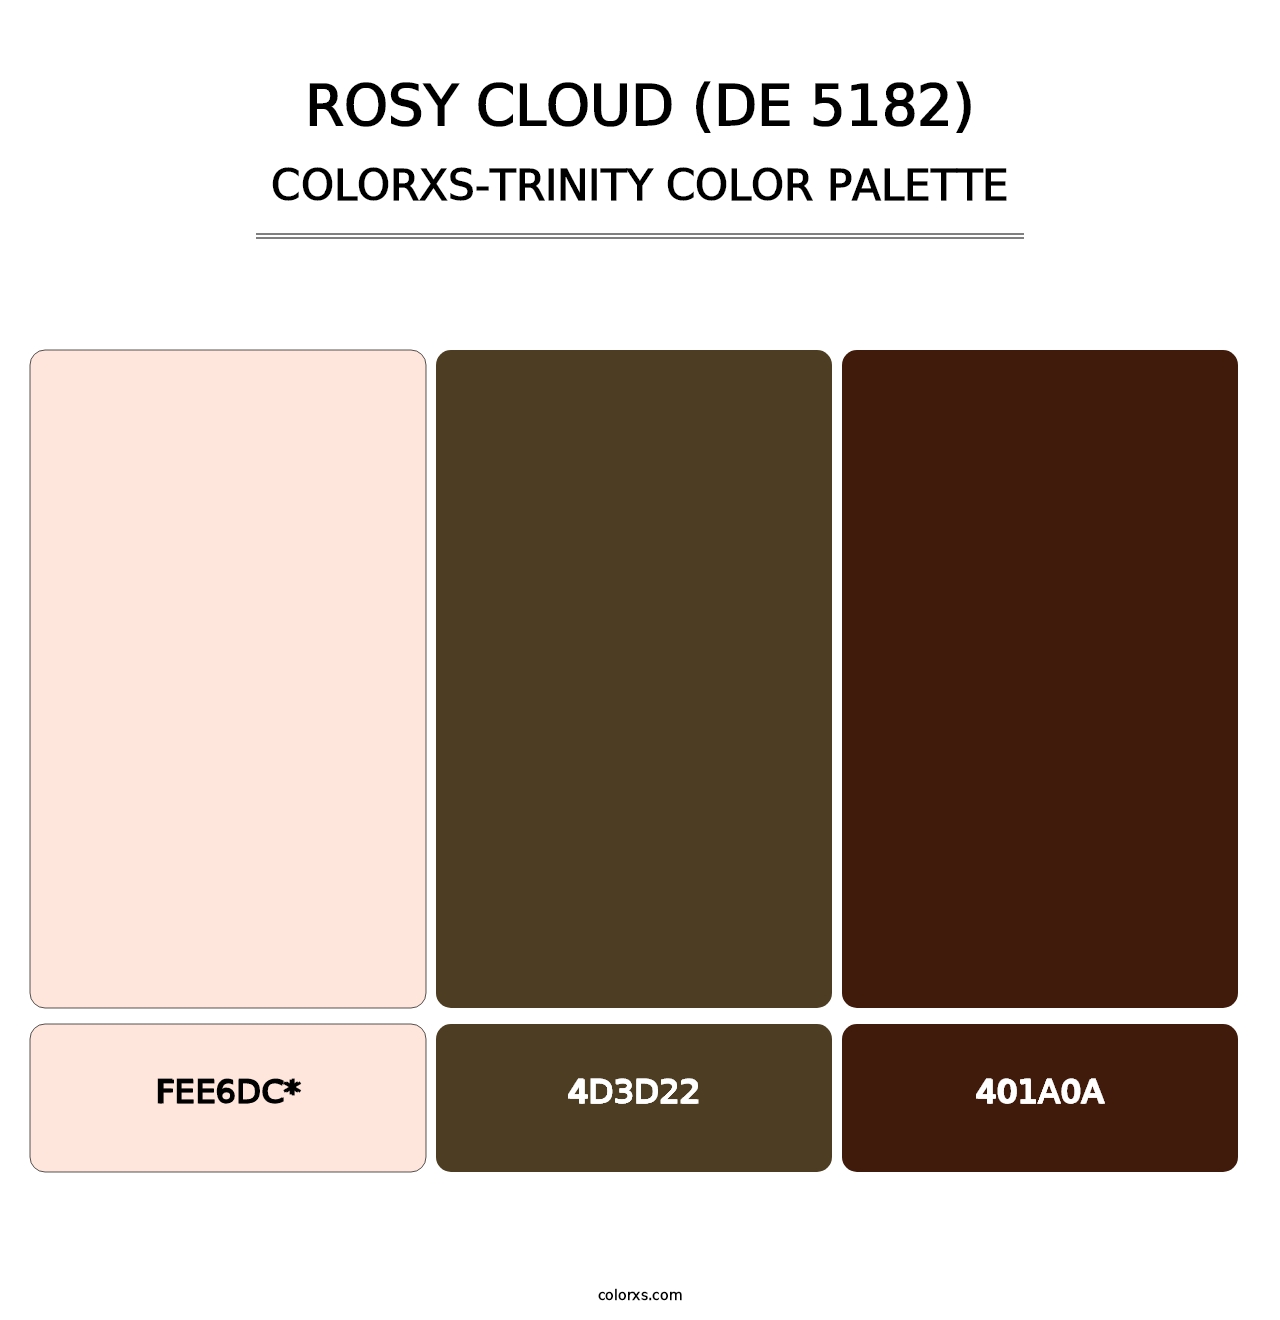 Rosy Cloud (DE 5182) - Colorxs Trinity Palette